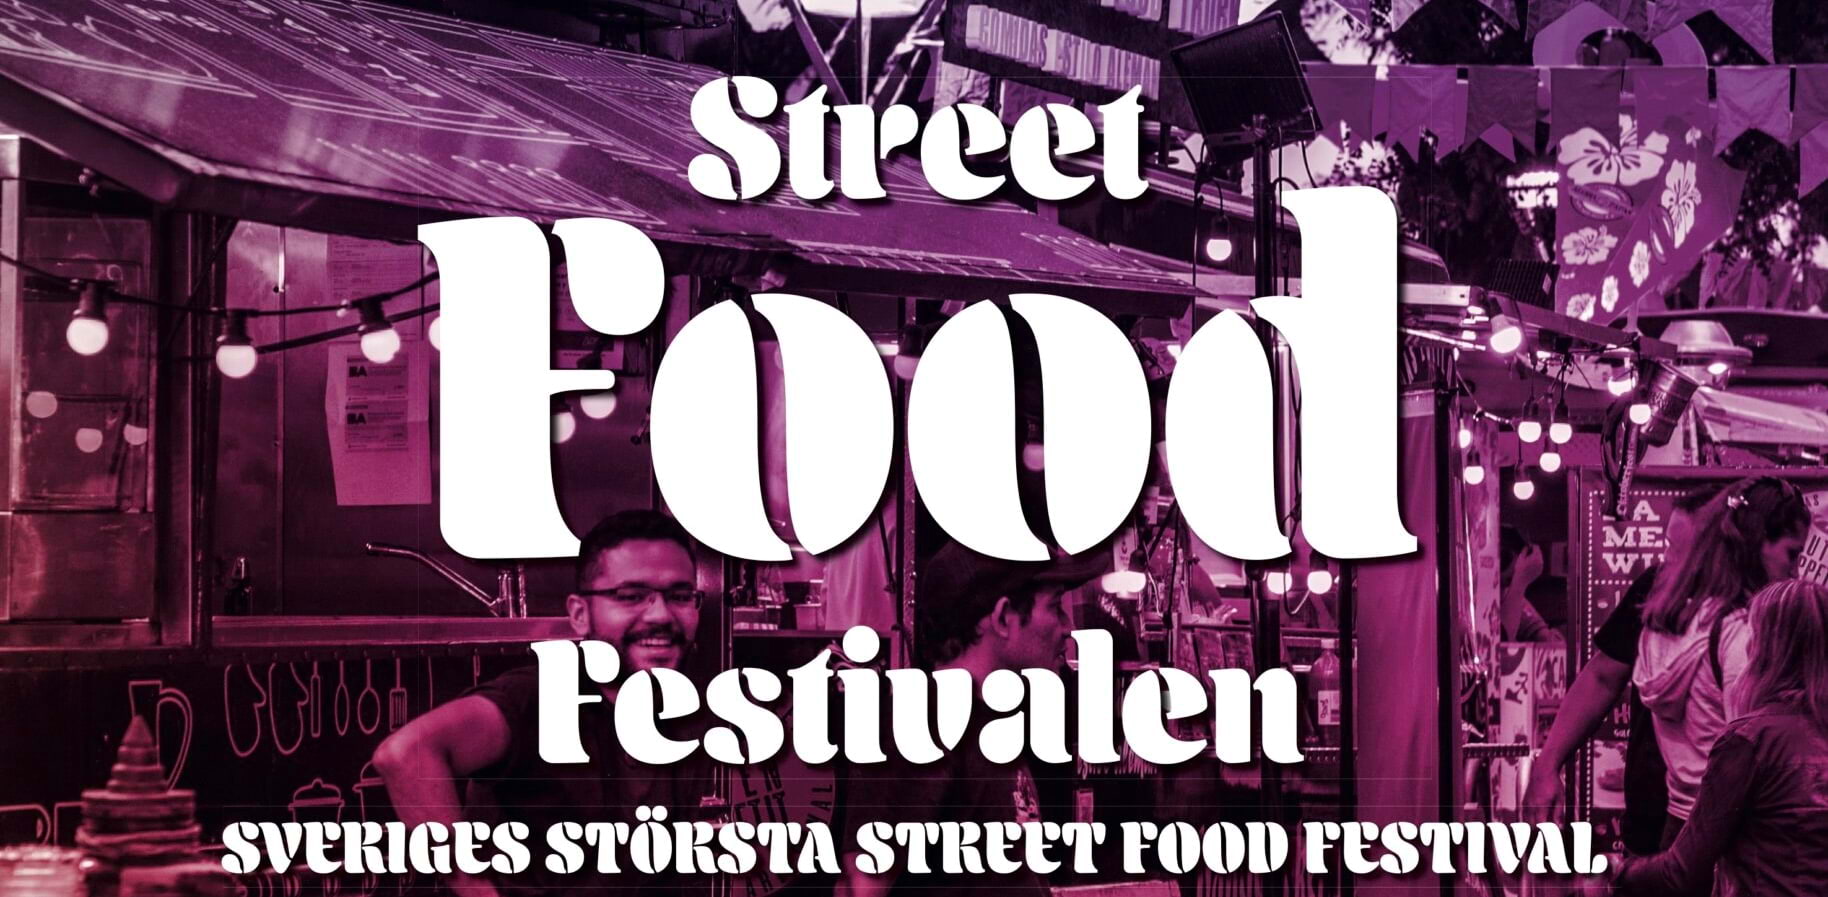 Streetfoodfestivalen intar åter igen Malmö. Foto: pressbild